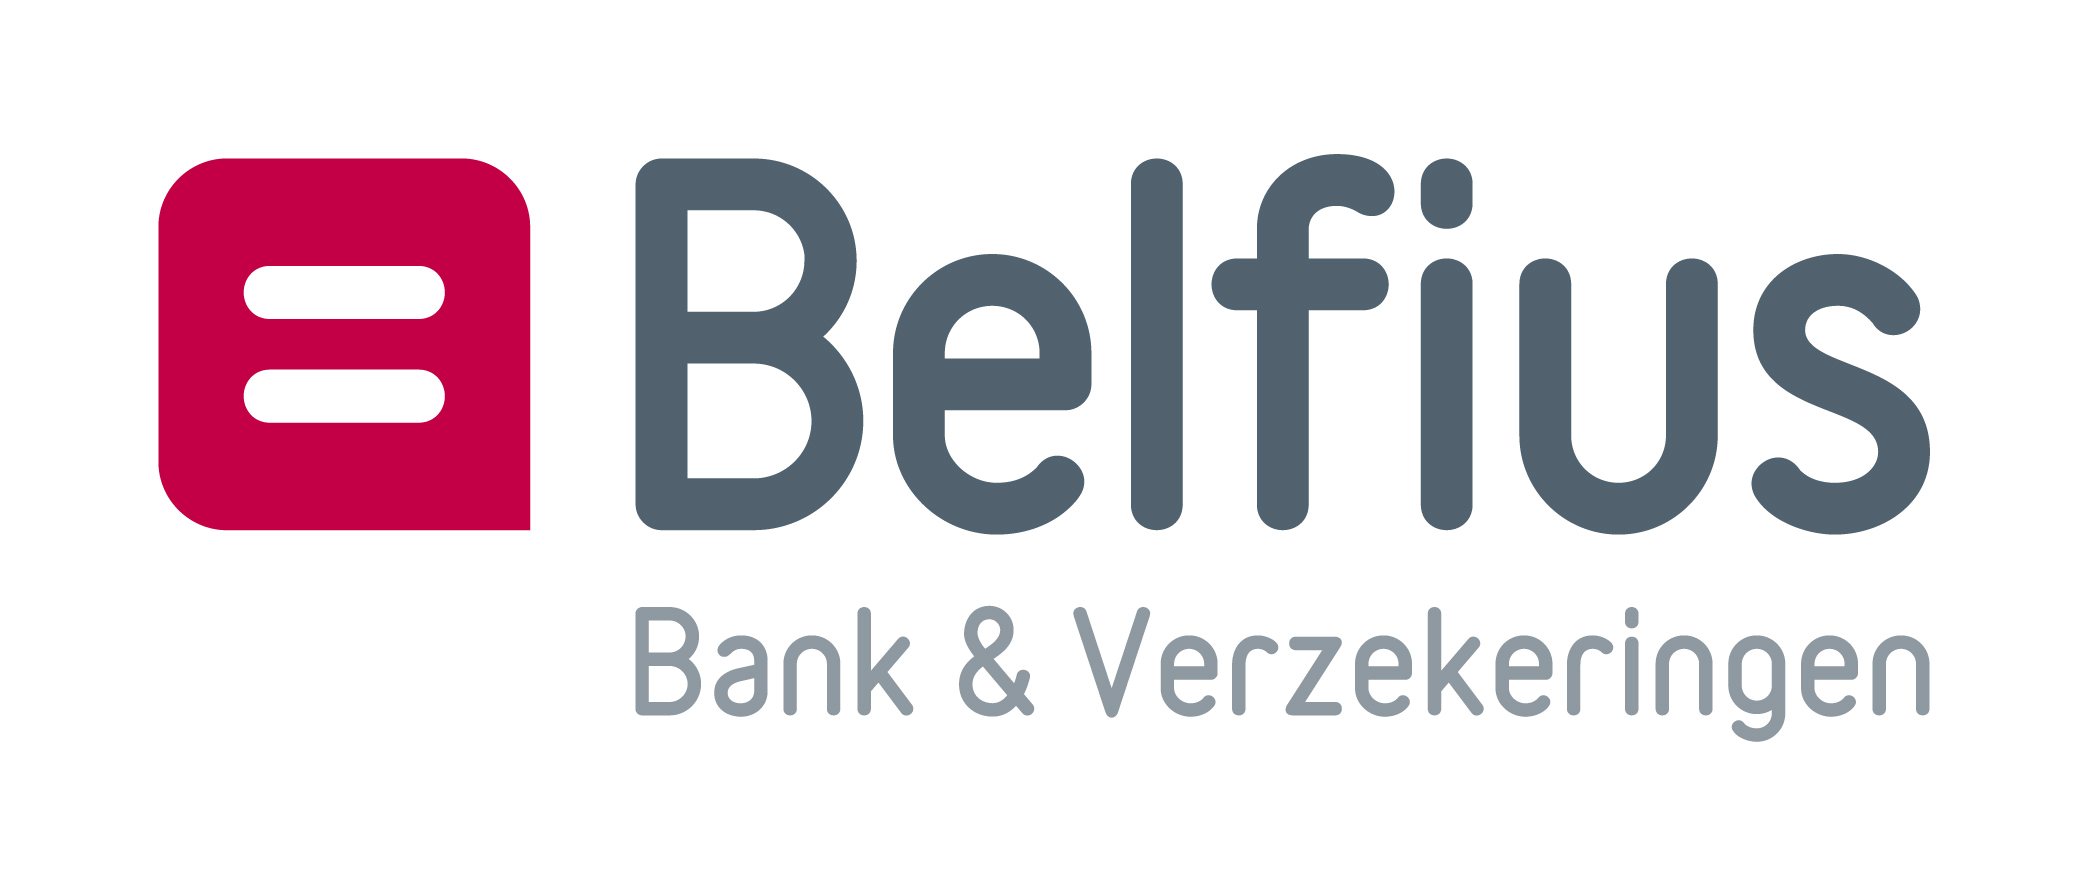 Kapitaalverhoging Cofinimmo Risiconiveau Belfius Way 0 1 2 3 4 5 6 Beleggersportret Kapitaalverhoging met voorkeurrechten April 2015 U zoekt een investering in aandelen genoteerd op Euronext Brussel;